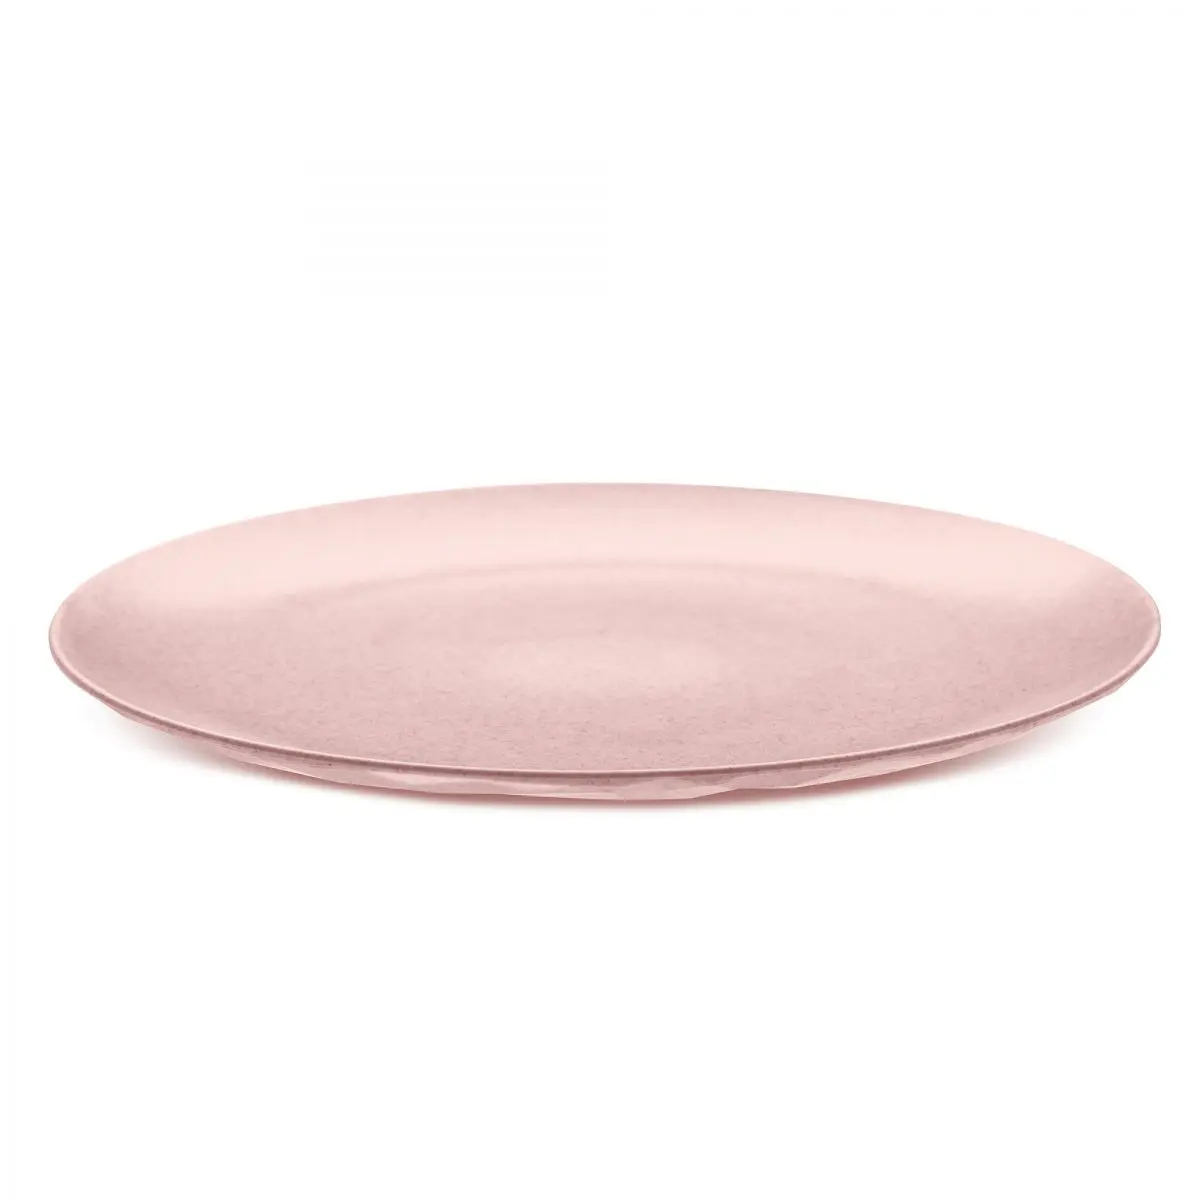 Séria bio riadu - CLUB tanier 26 cm, ružová